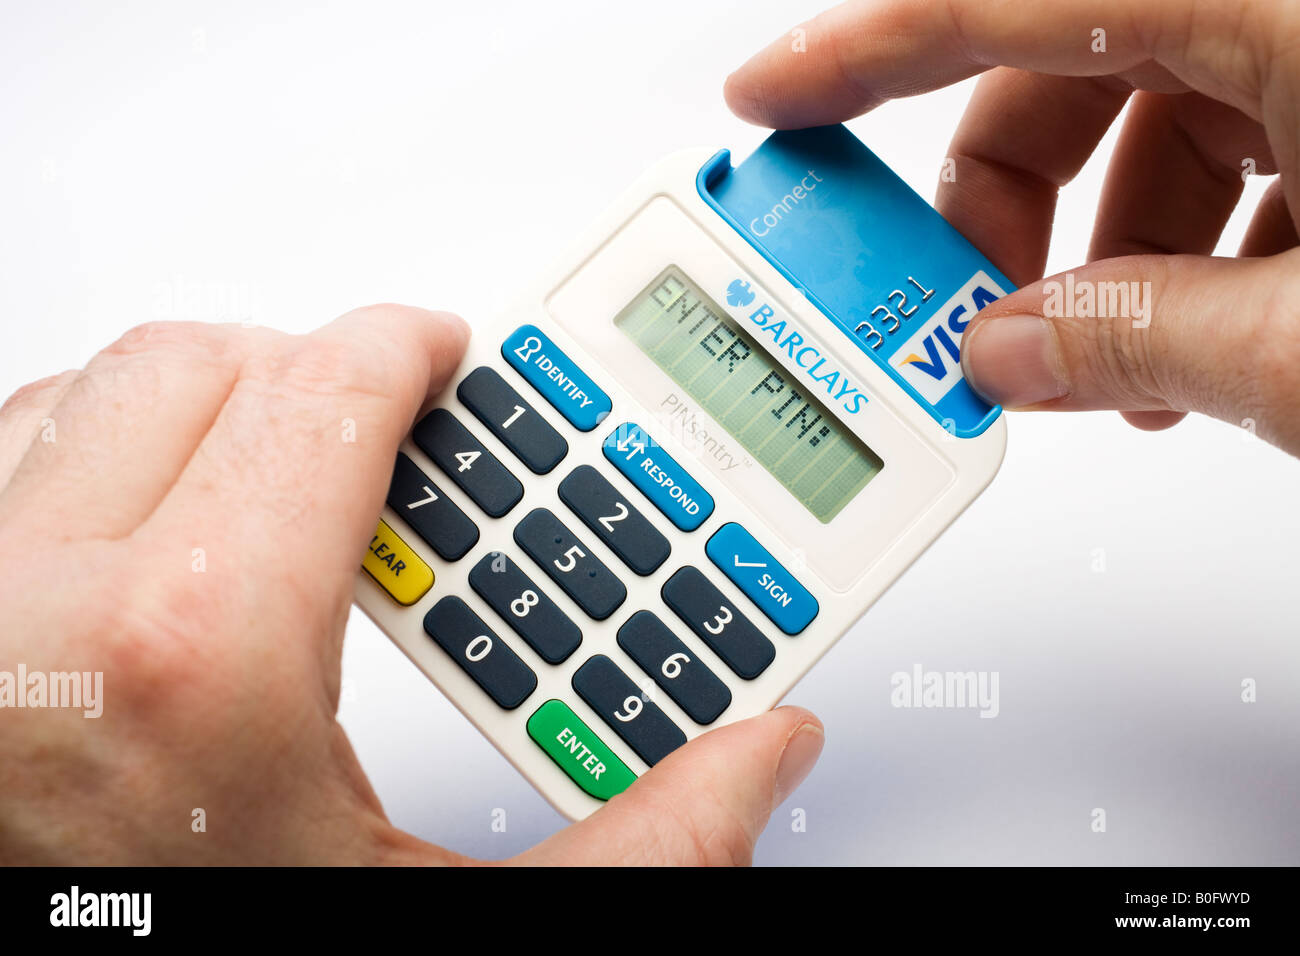 L'insertion d'une carte de débit dans un axe de la Barclays Bank lecteur de cartes à mémoire Banque D'Images